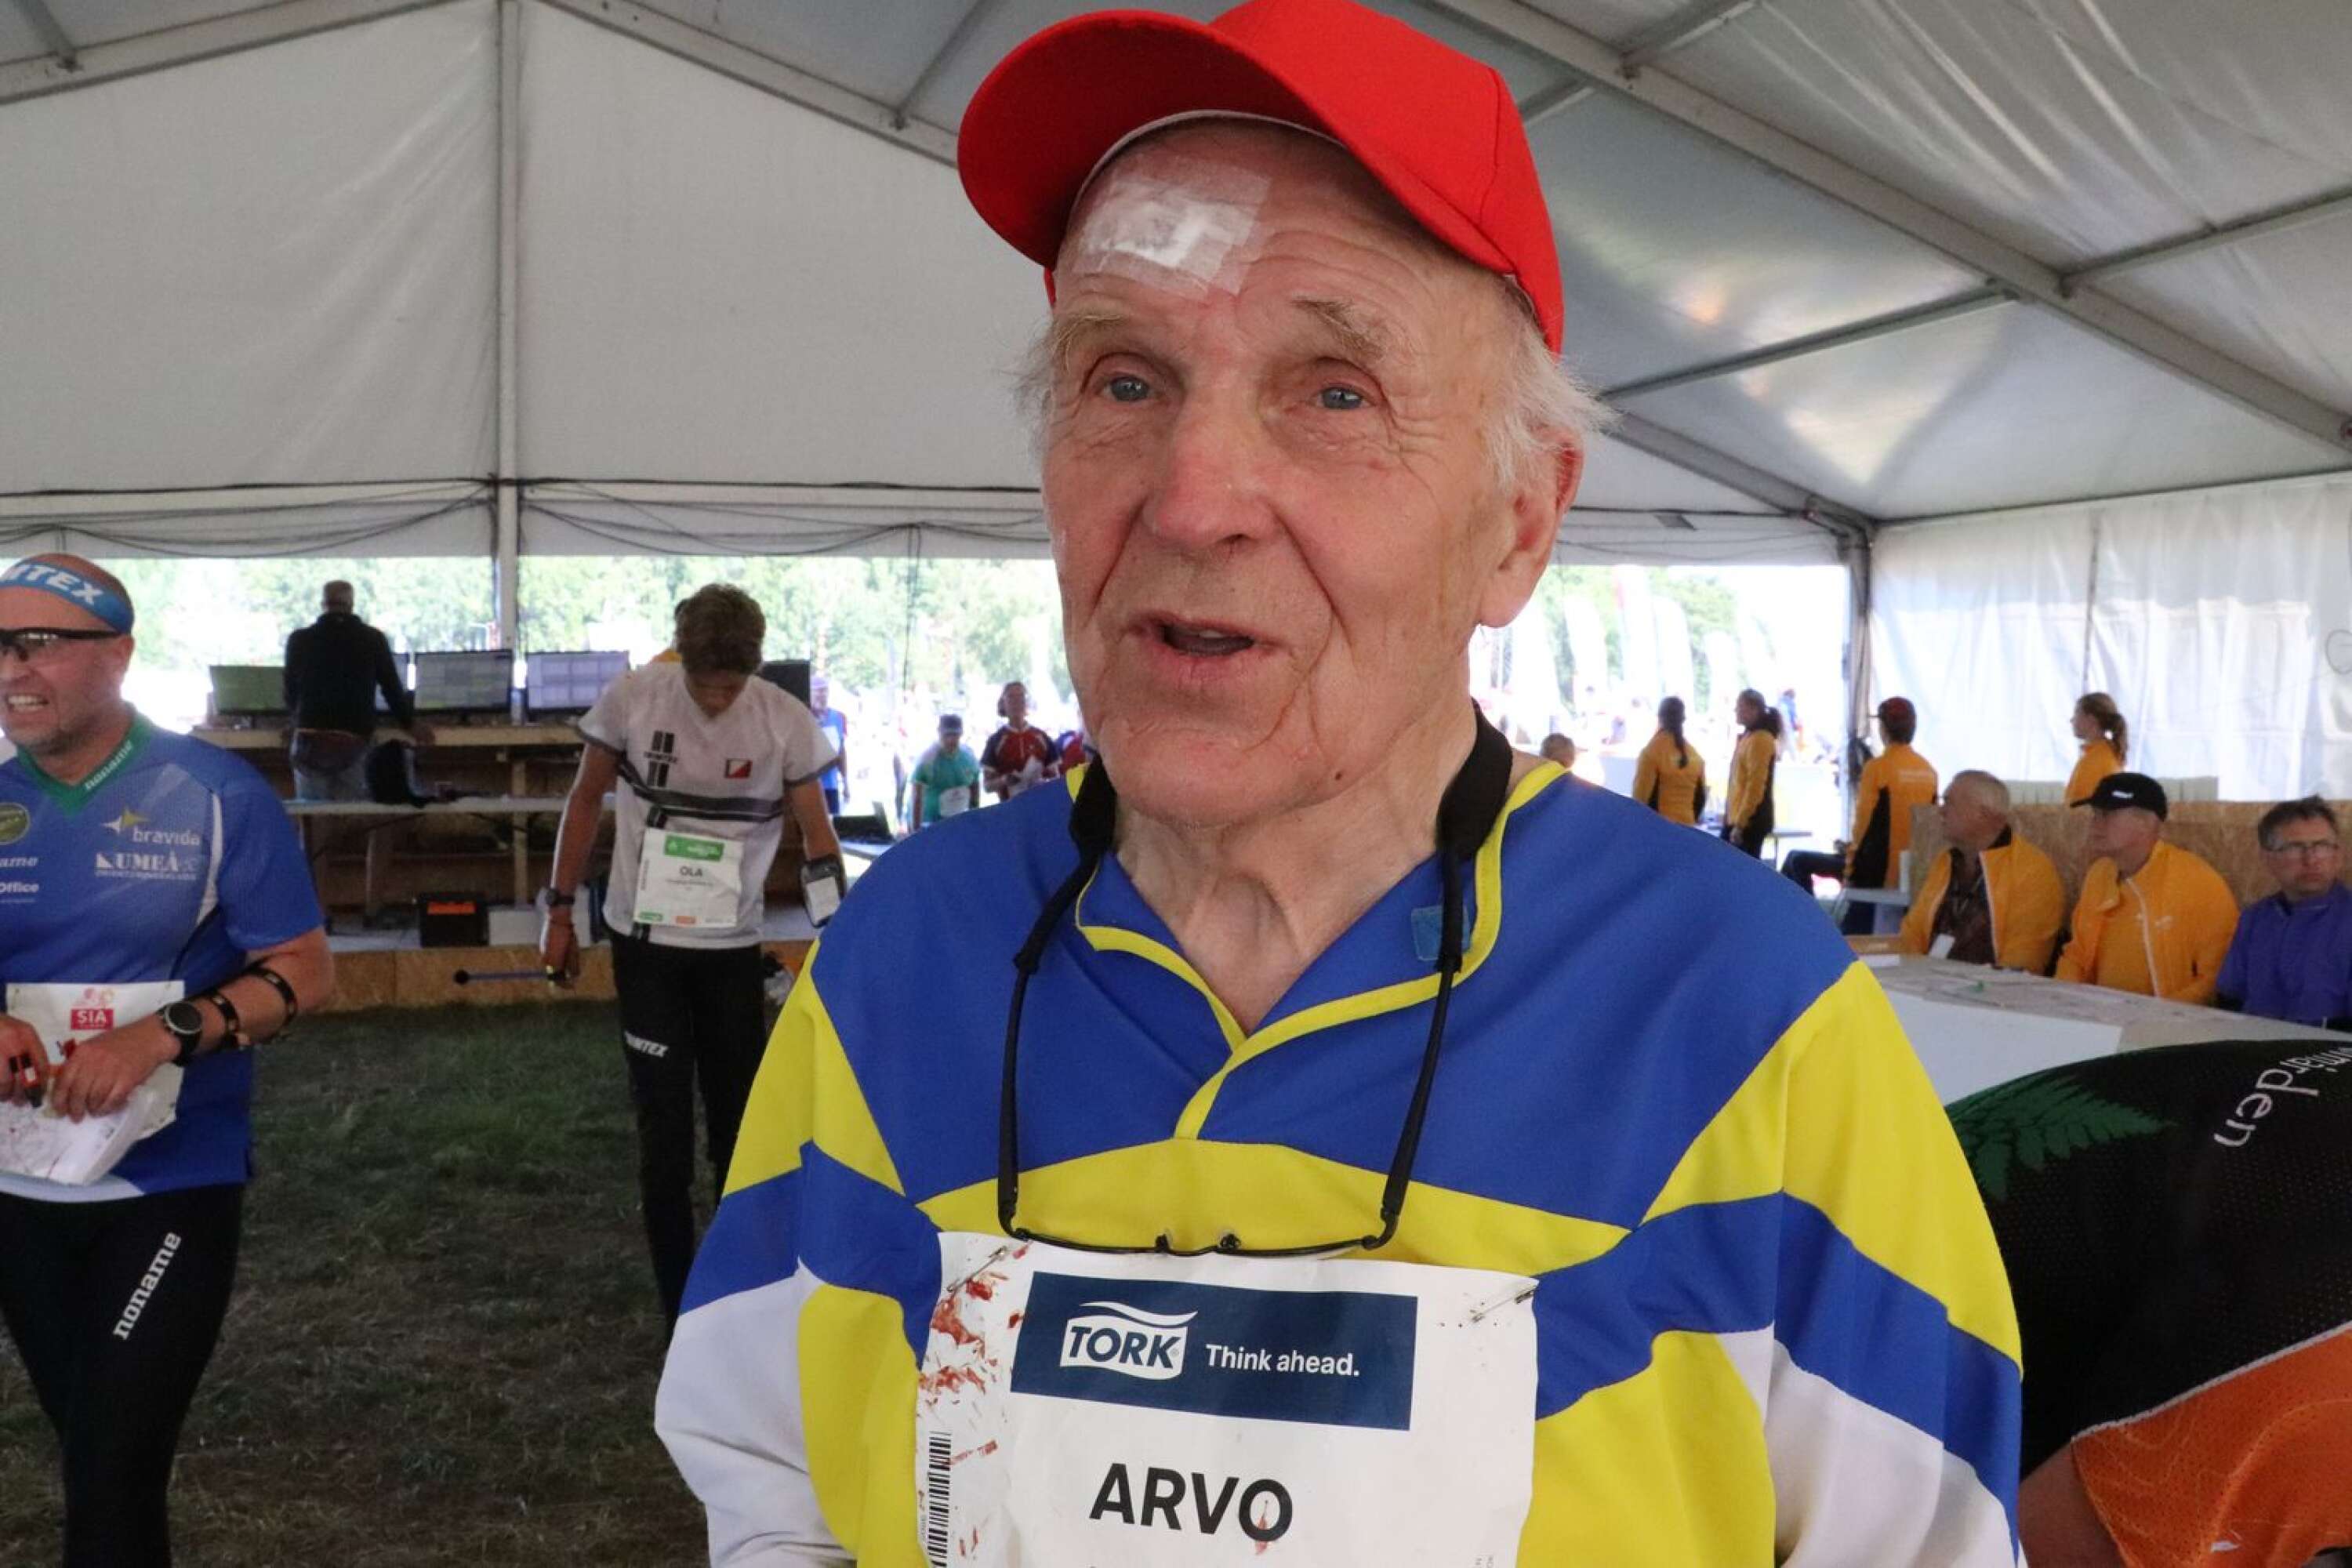 Arvo Hyvönen är Värmlands äldsta deltagare, fyller 90 år nästa gång. Han skaffade sig ett rejält sår i pannan på den tredje etappen efter att ha trillat på en sten, men att ge upp var inte att tänka på. På den fjärde etappen var han ute i skogen igen och letade kontroller.